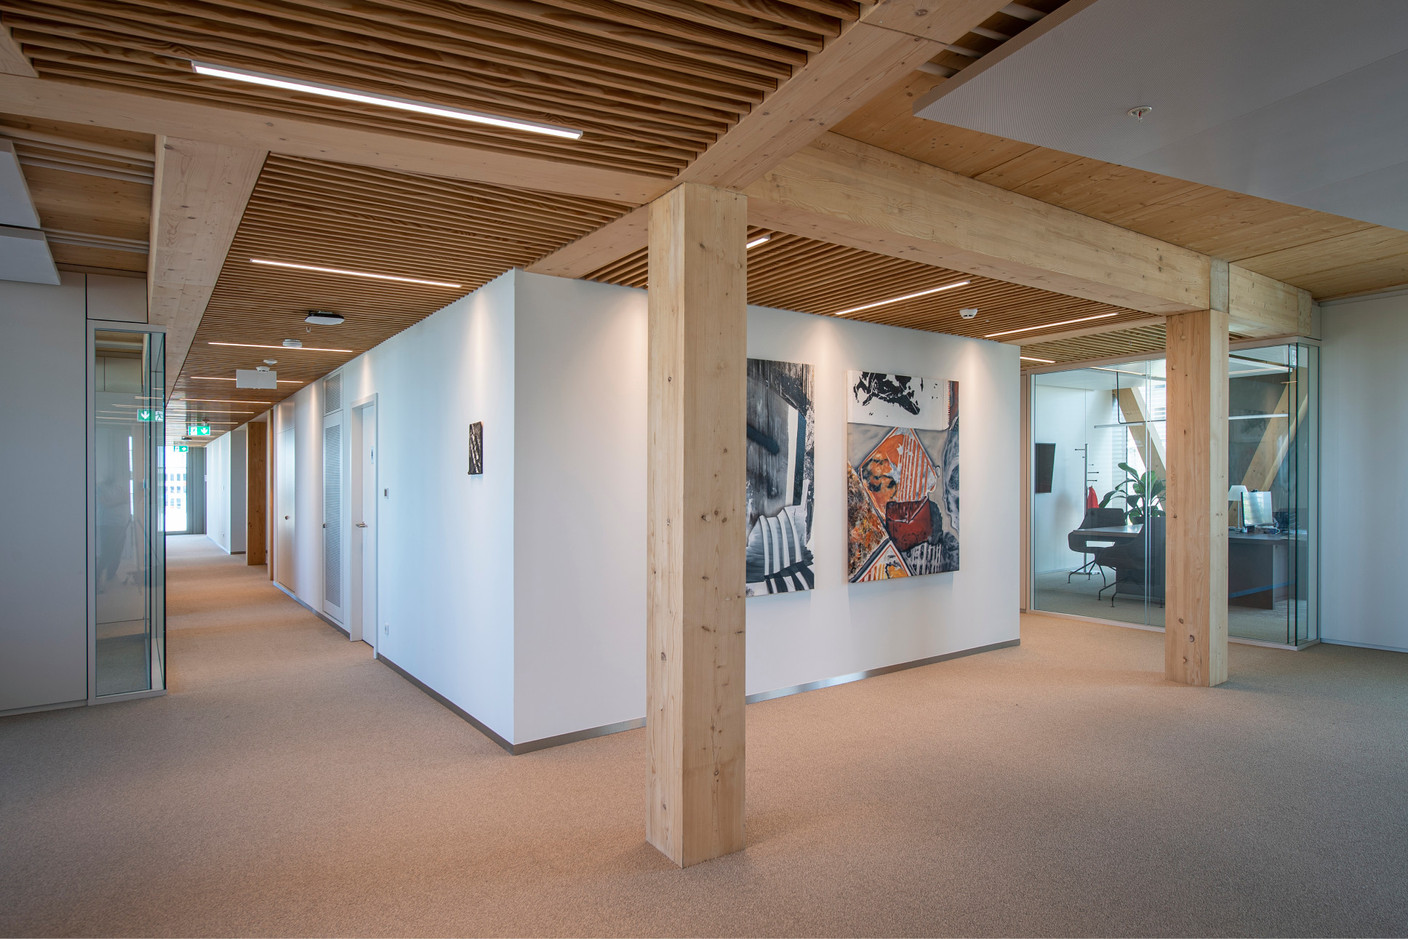 La collection d’art de Baloise participe à l’ambiance positive au sein des bureaux. (Photo: Baloise)